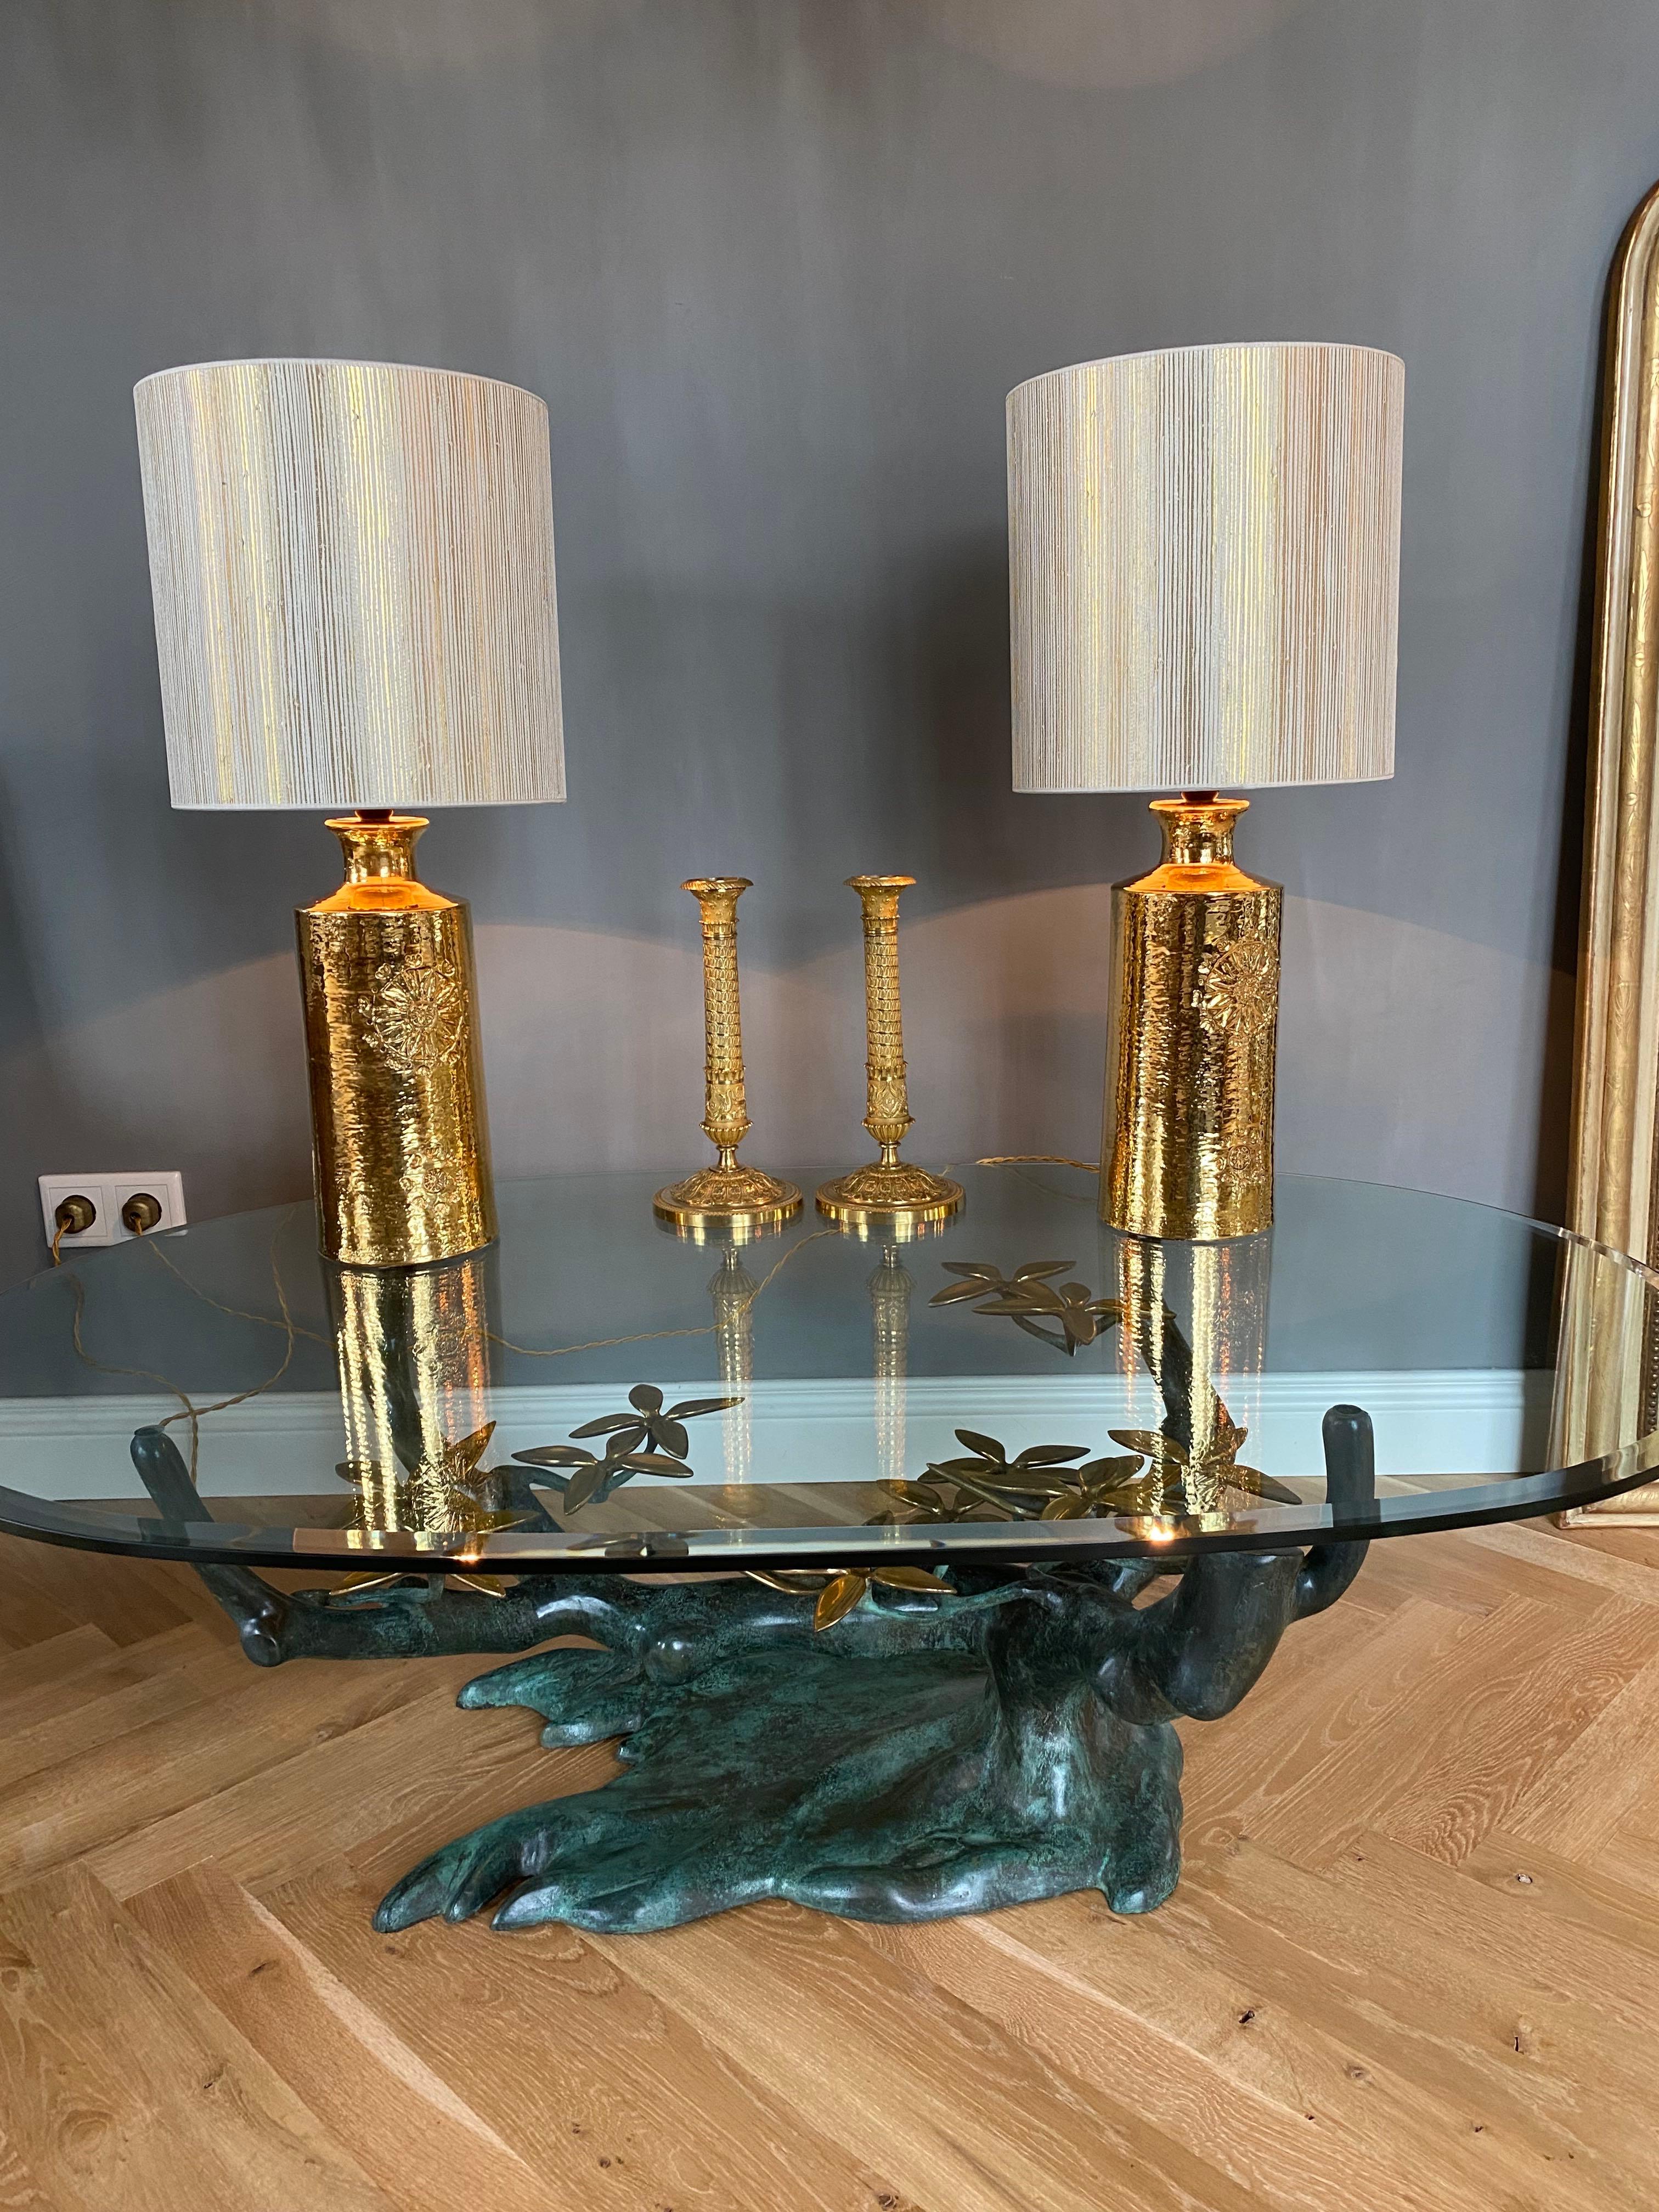 Très belle et chique paire de lampes de table en céramique conçue par Bitossi pour Bergboms- Suède.
Ces fabuleuses lampes sont émaillées et dorées, avec un décor floral à l'avant.
Période - ca. 1960-1970
Lieu d'origine - Italie/ Suède
Labellisé en